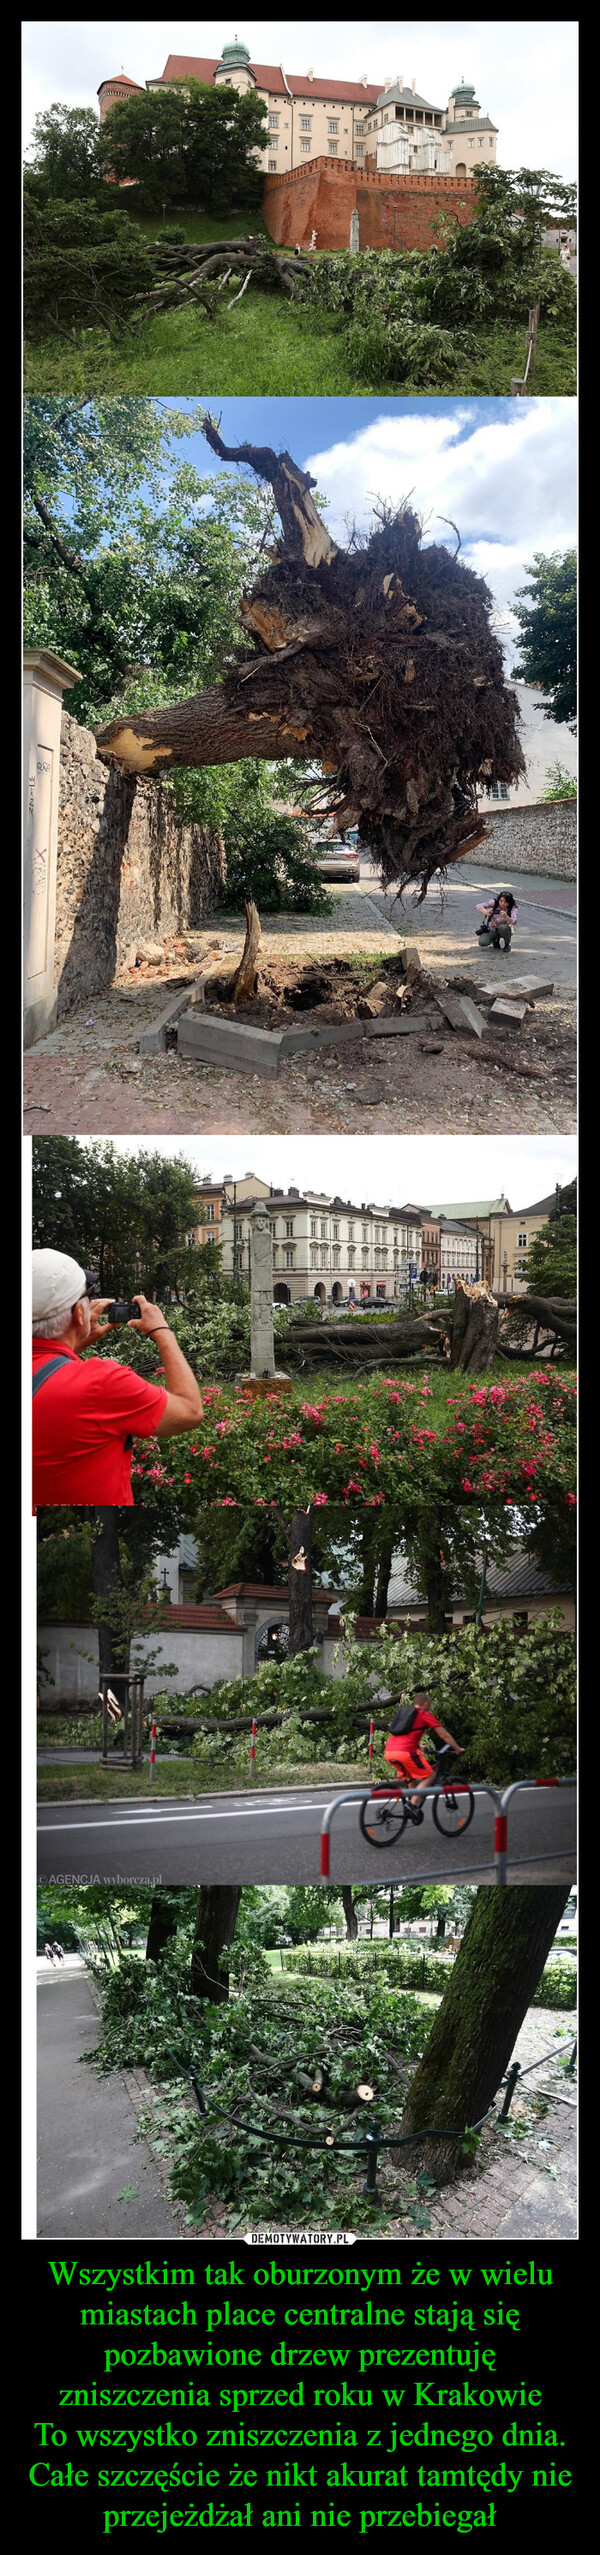 Wszystkim tak oburzonym że w wielu miastach place centralne stają się pozbawione drzew prezentuję zniszczenia sprzed roku w Krakowie
To wszystko zniszczenia z jednego dnia. Całe szczęście że nikt akurat tamtędy nie przejeżdżał ani nie przebiegał